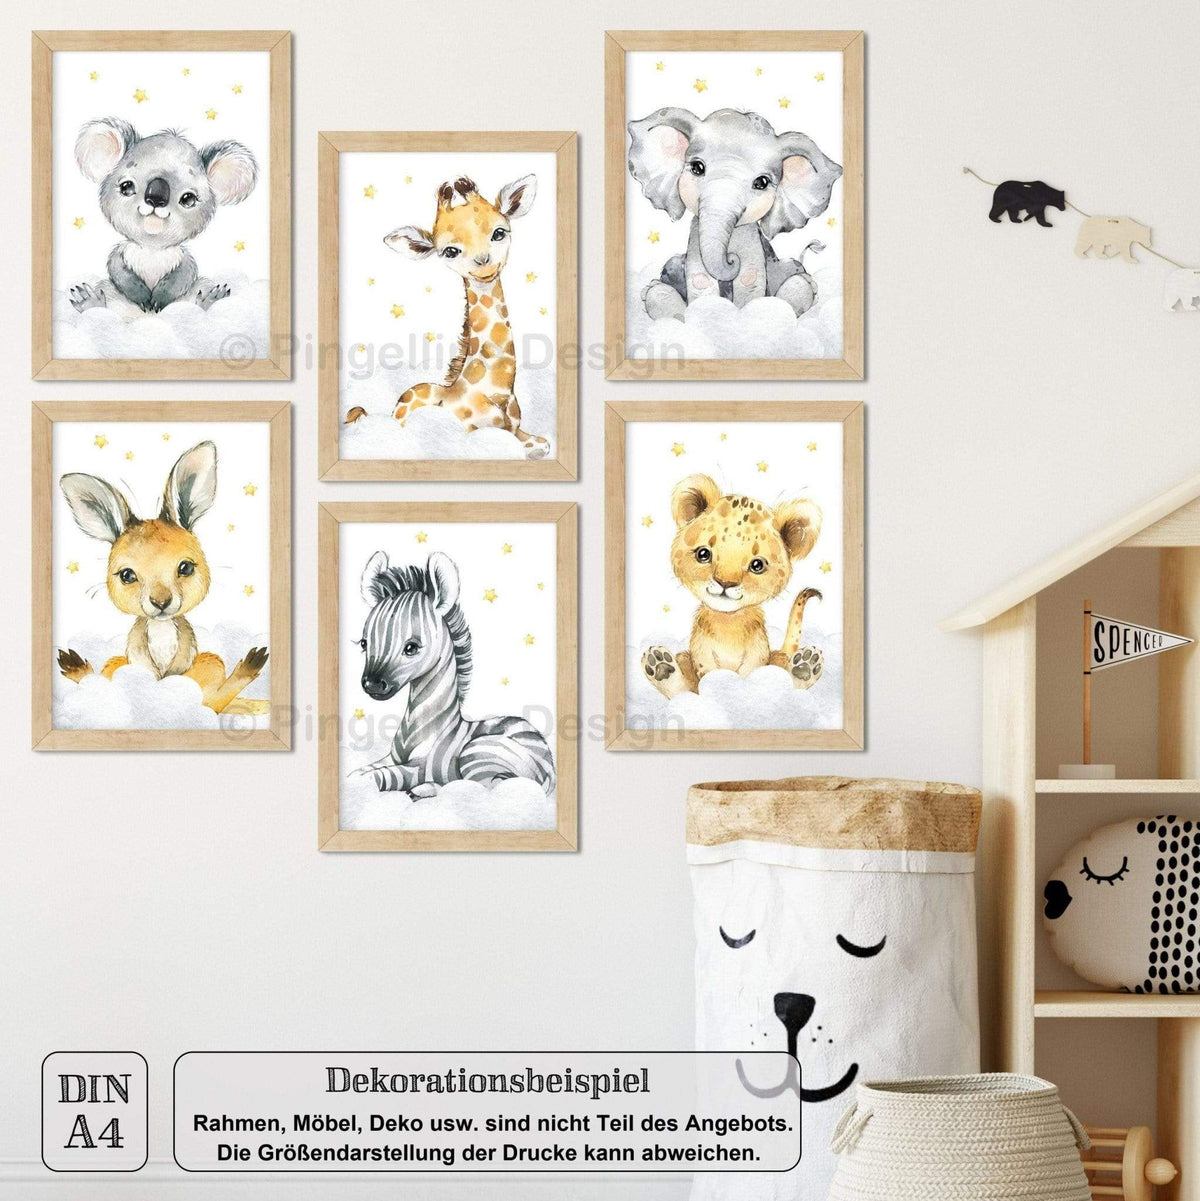 A4/A3, Babyzimmer Bilder, Poster Kinderzimmer, Kinderzimmer Bilder, Kinderzimmer Deko - Safari Tiere - 6er Set - Pingelline Design